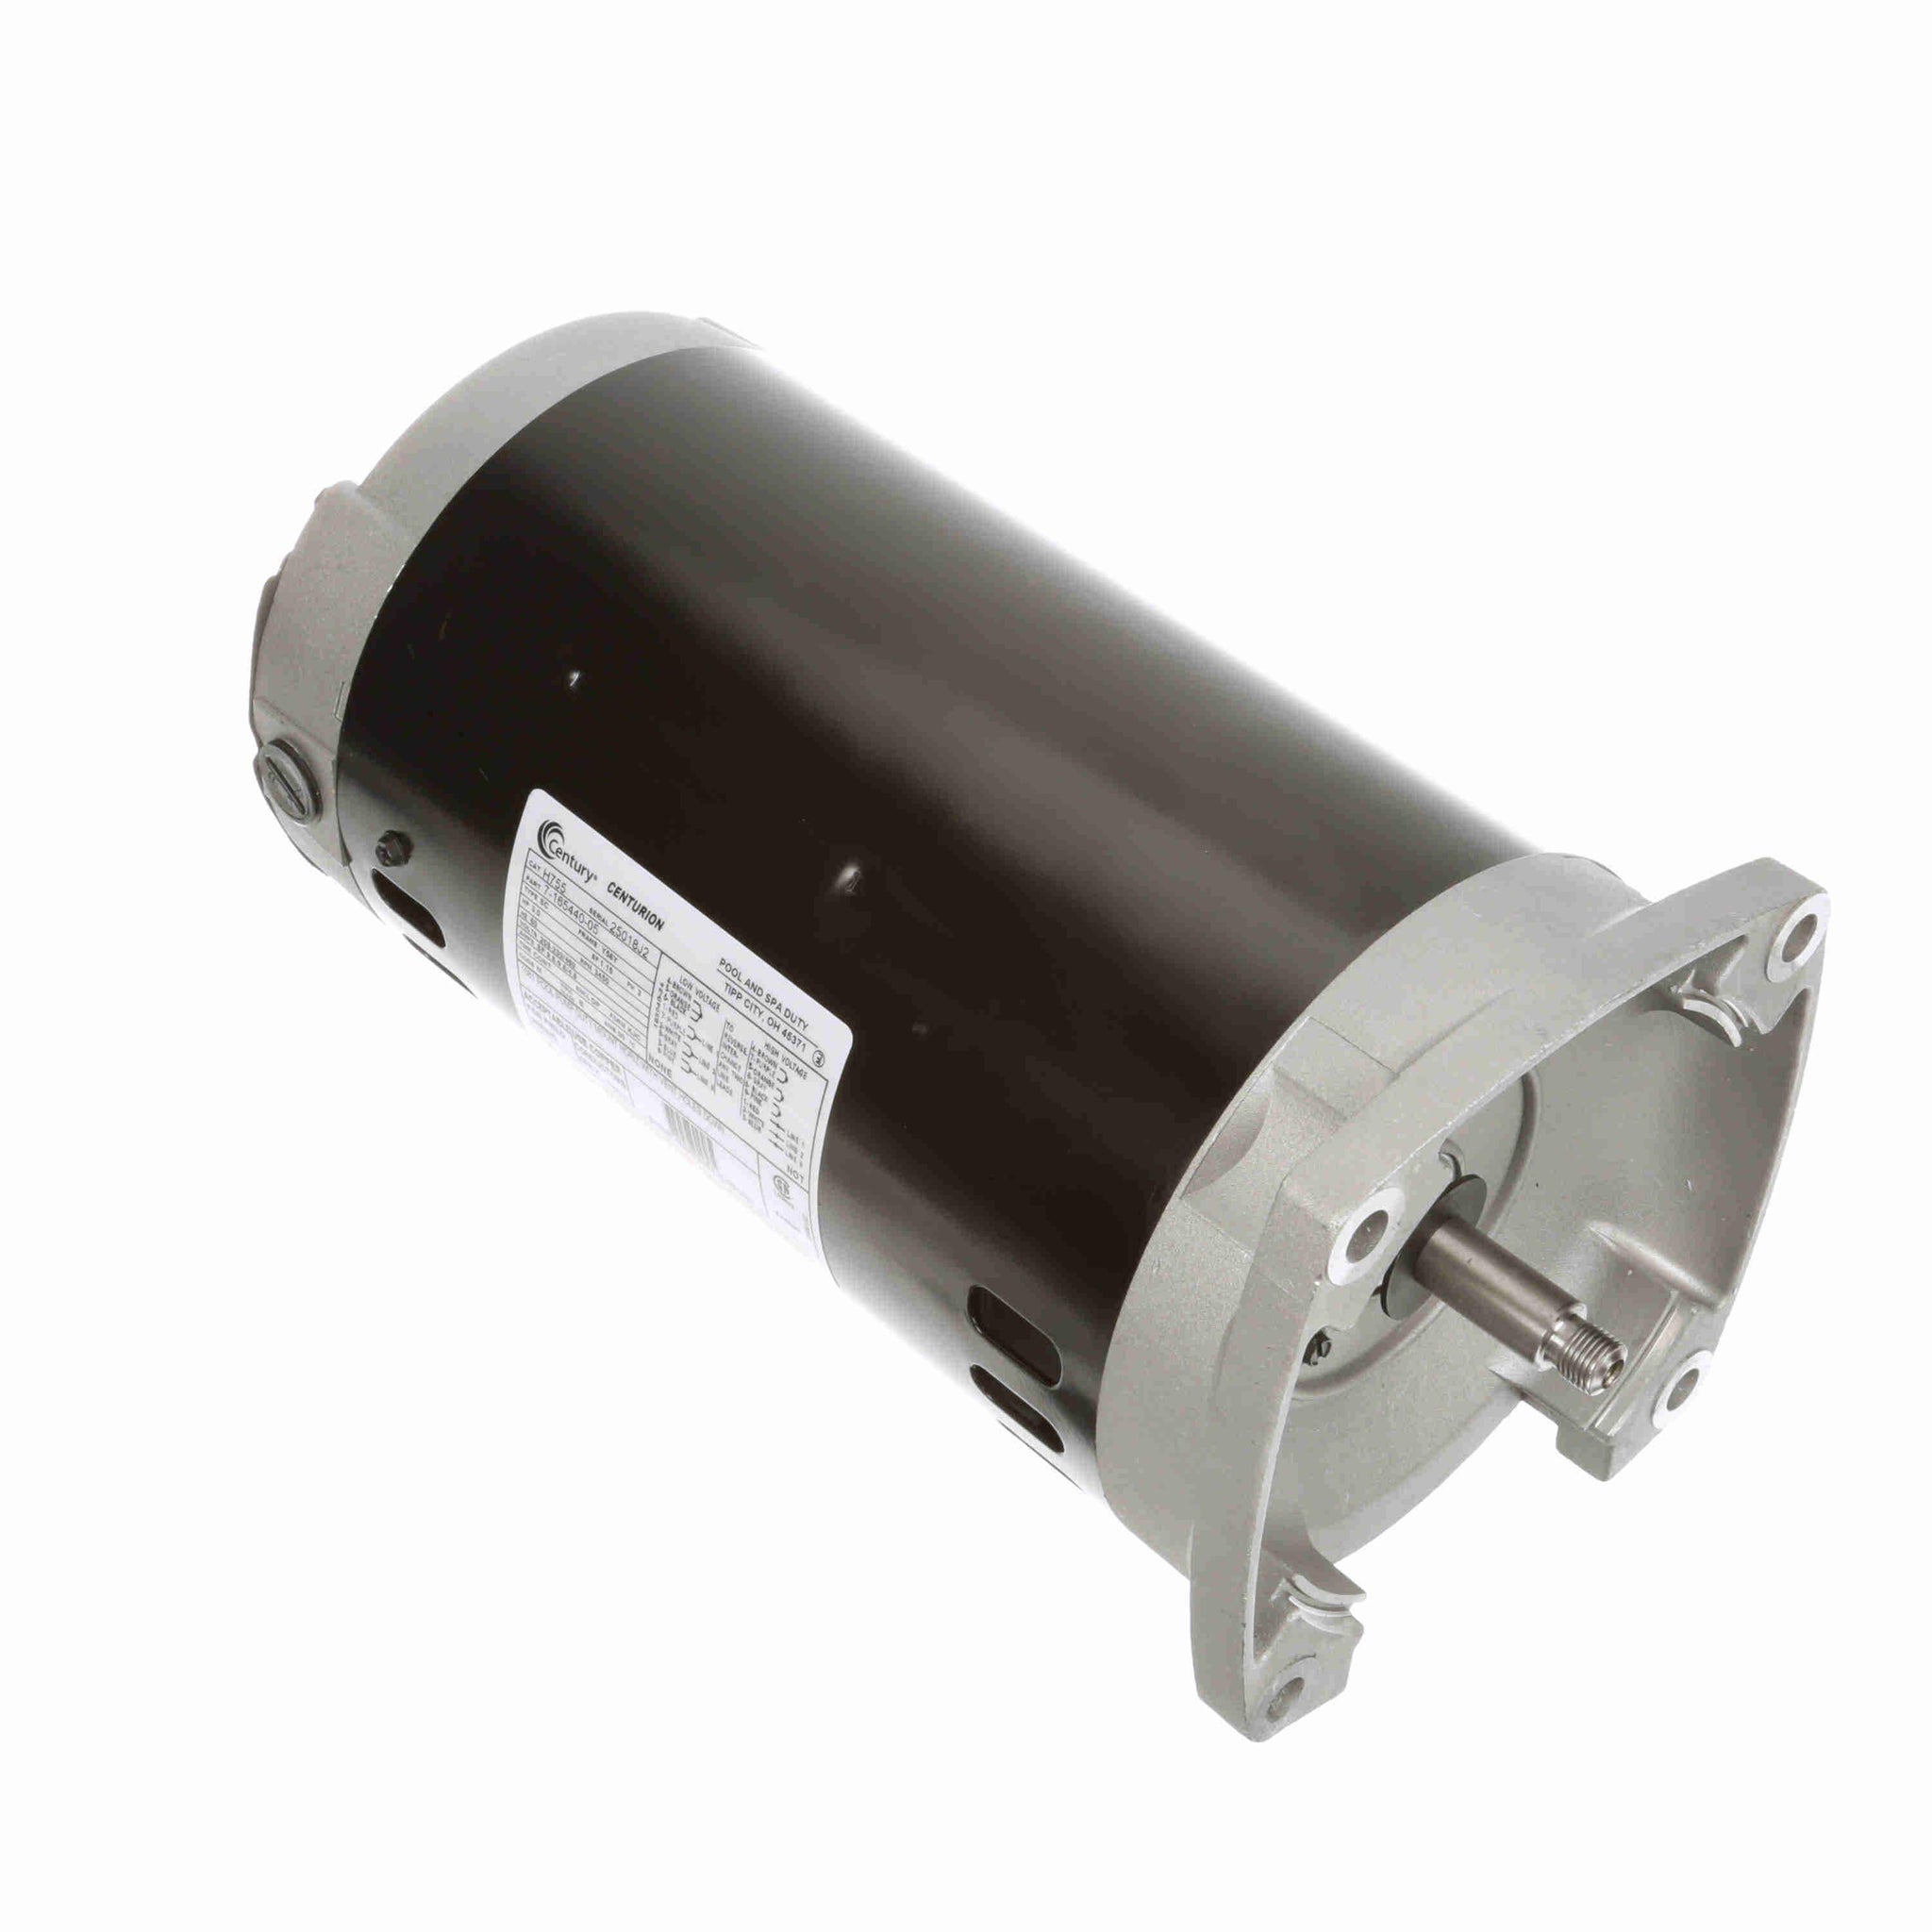 H755 -  3.0 HP Pool Pump Motor, 3 phase, 3600 RPM, 208-230/460 V, 56Y Frame, ODP - Hardware & Moreee